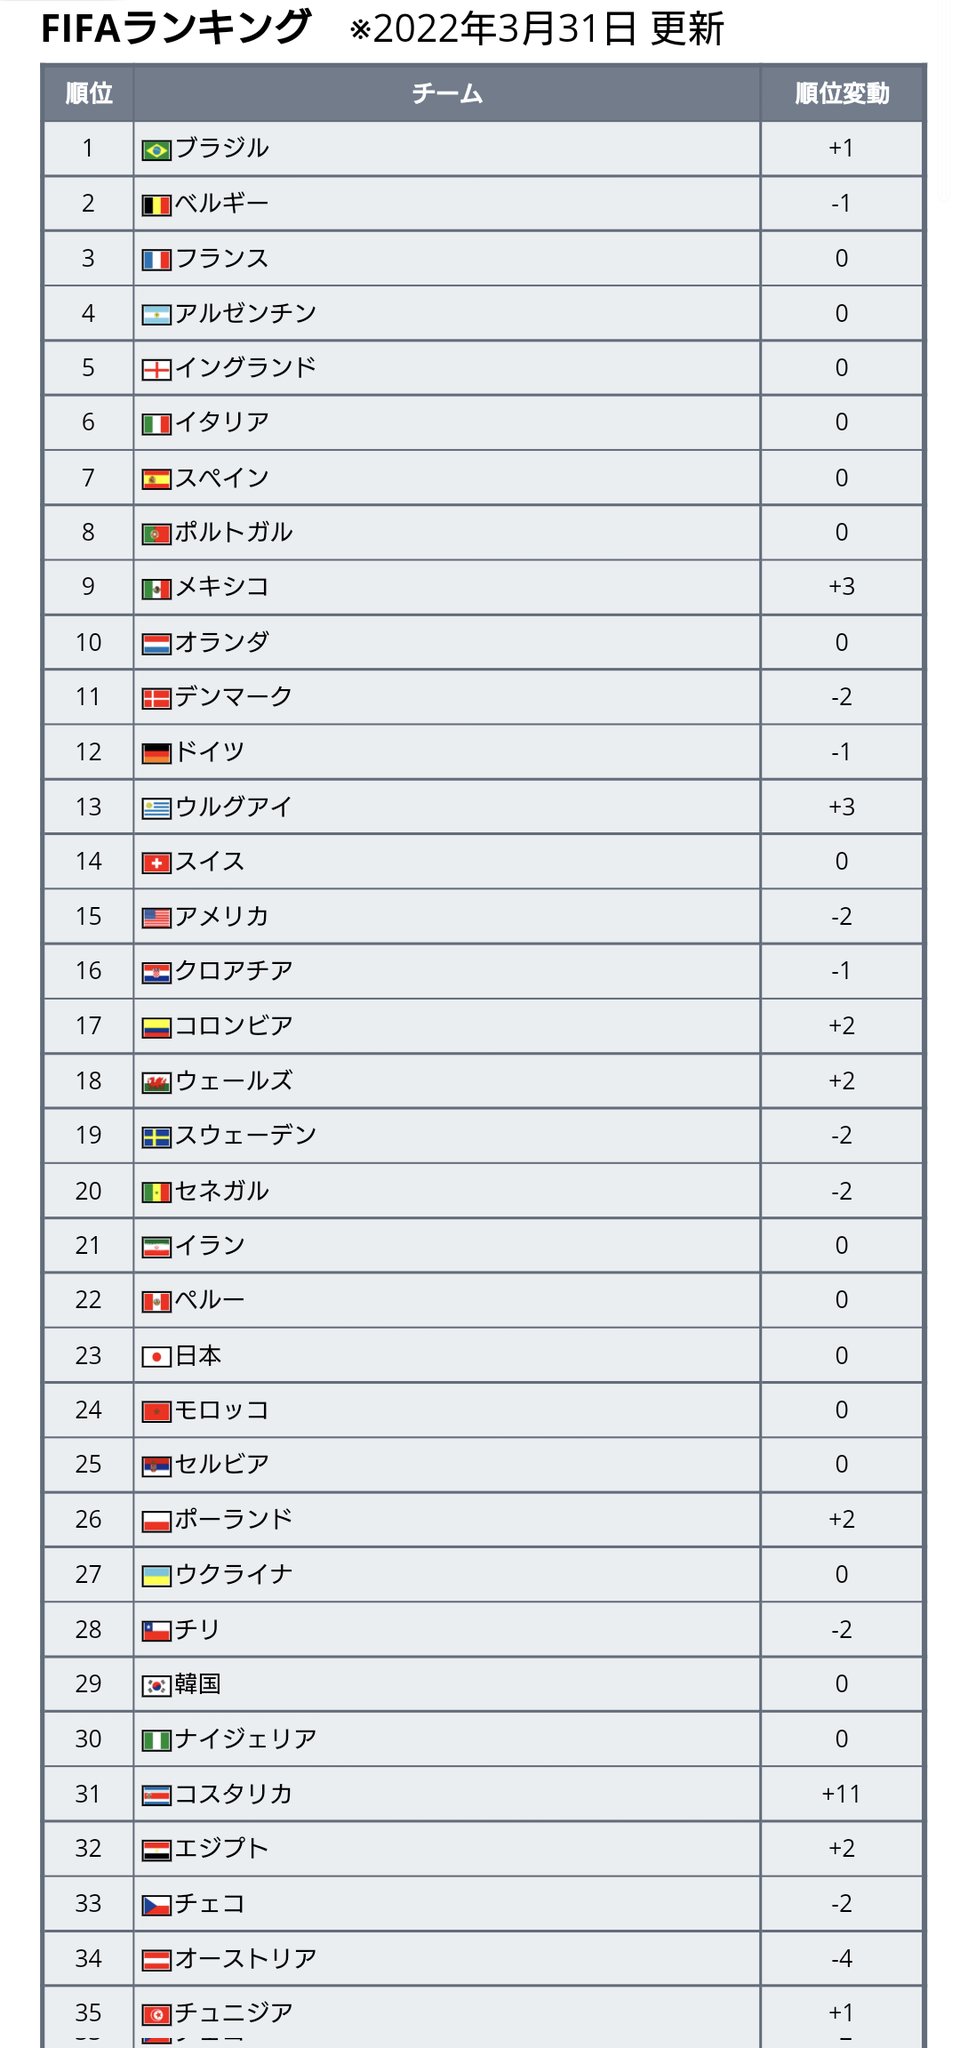 Twitter 上的 ワールドサッカー代表戦 最新fifaランキングが発表 22 3 31発表 日本は前回と変わらず23位で アジア2位キープ 全体では 3年半首位をキープしてきたベルギーが2位となり 変わってブラジルが首位に T Co Pz8sxifyv3 Twitter